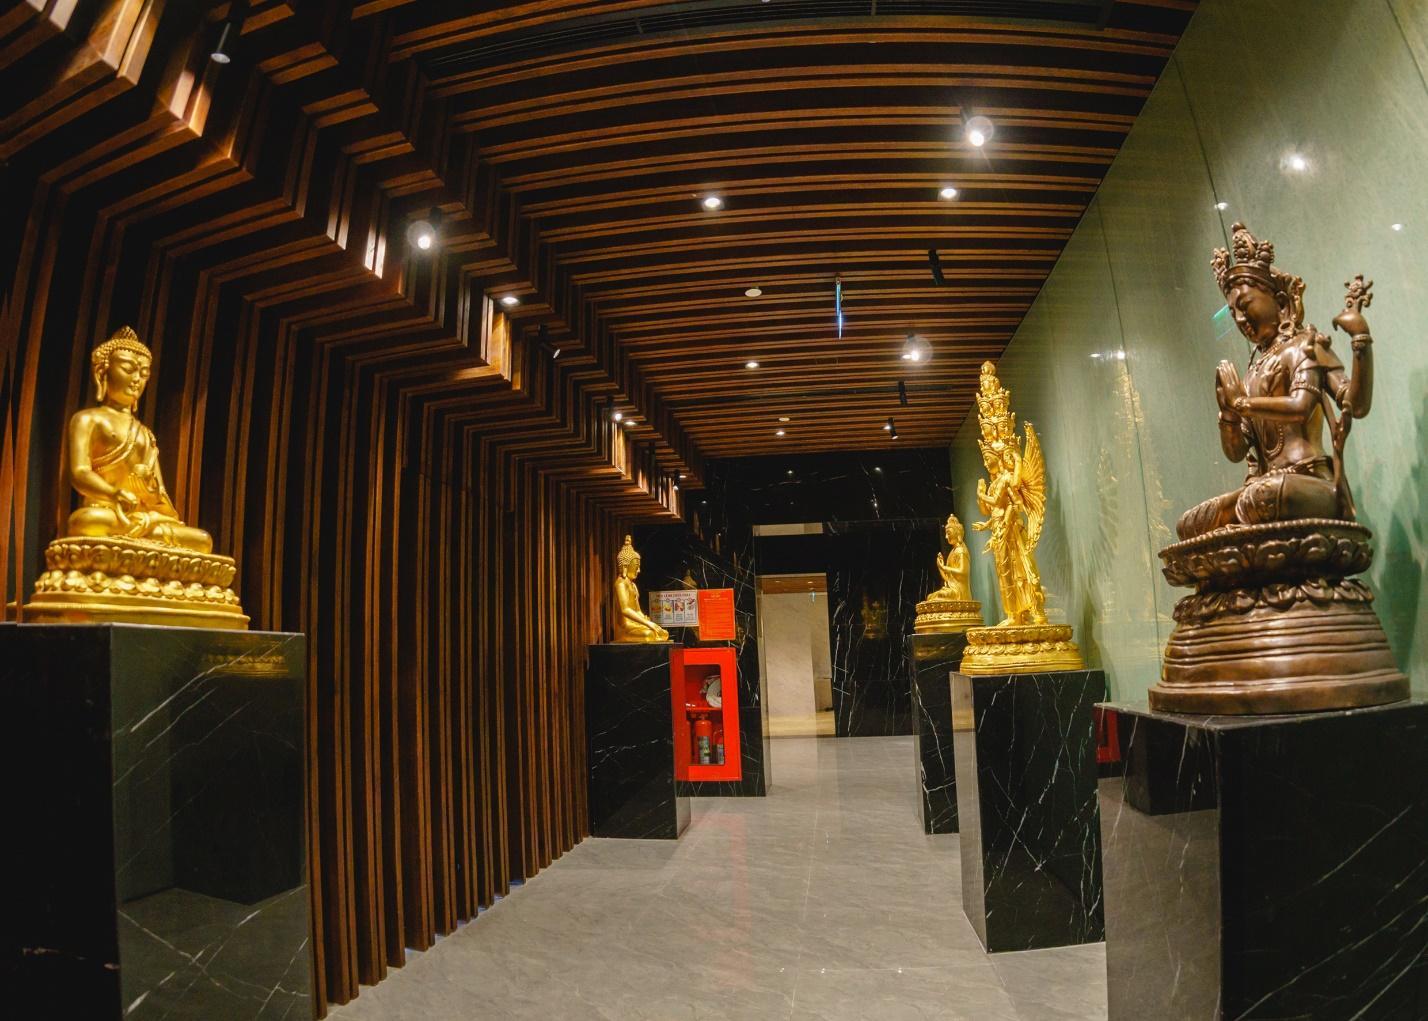 Tết này đến núi Bà Đen khám phá văn hóa, nghệ thuật Phật giáo ấn tượng - Ảnh 5.